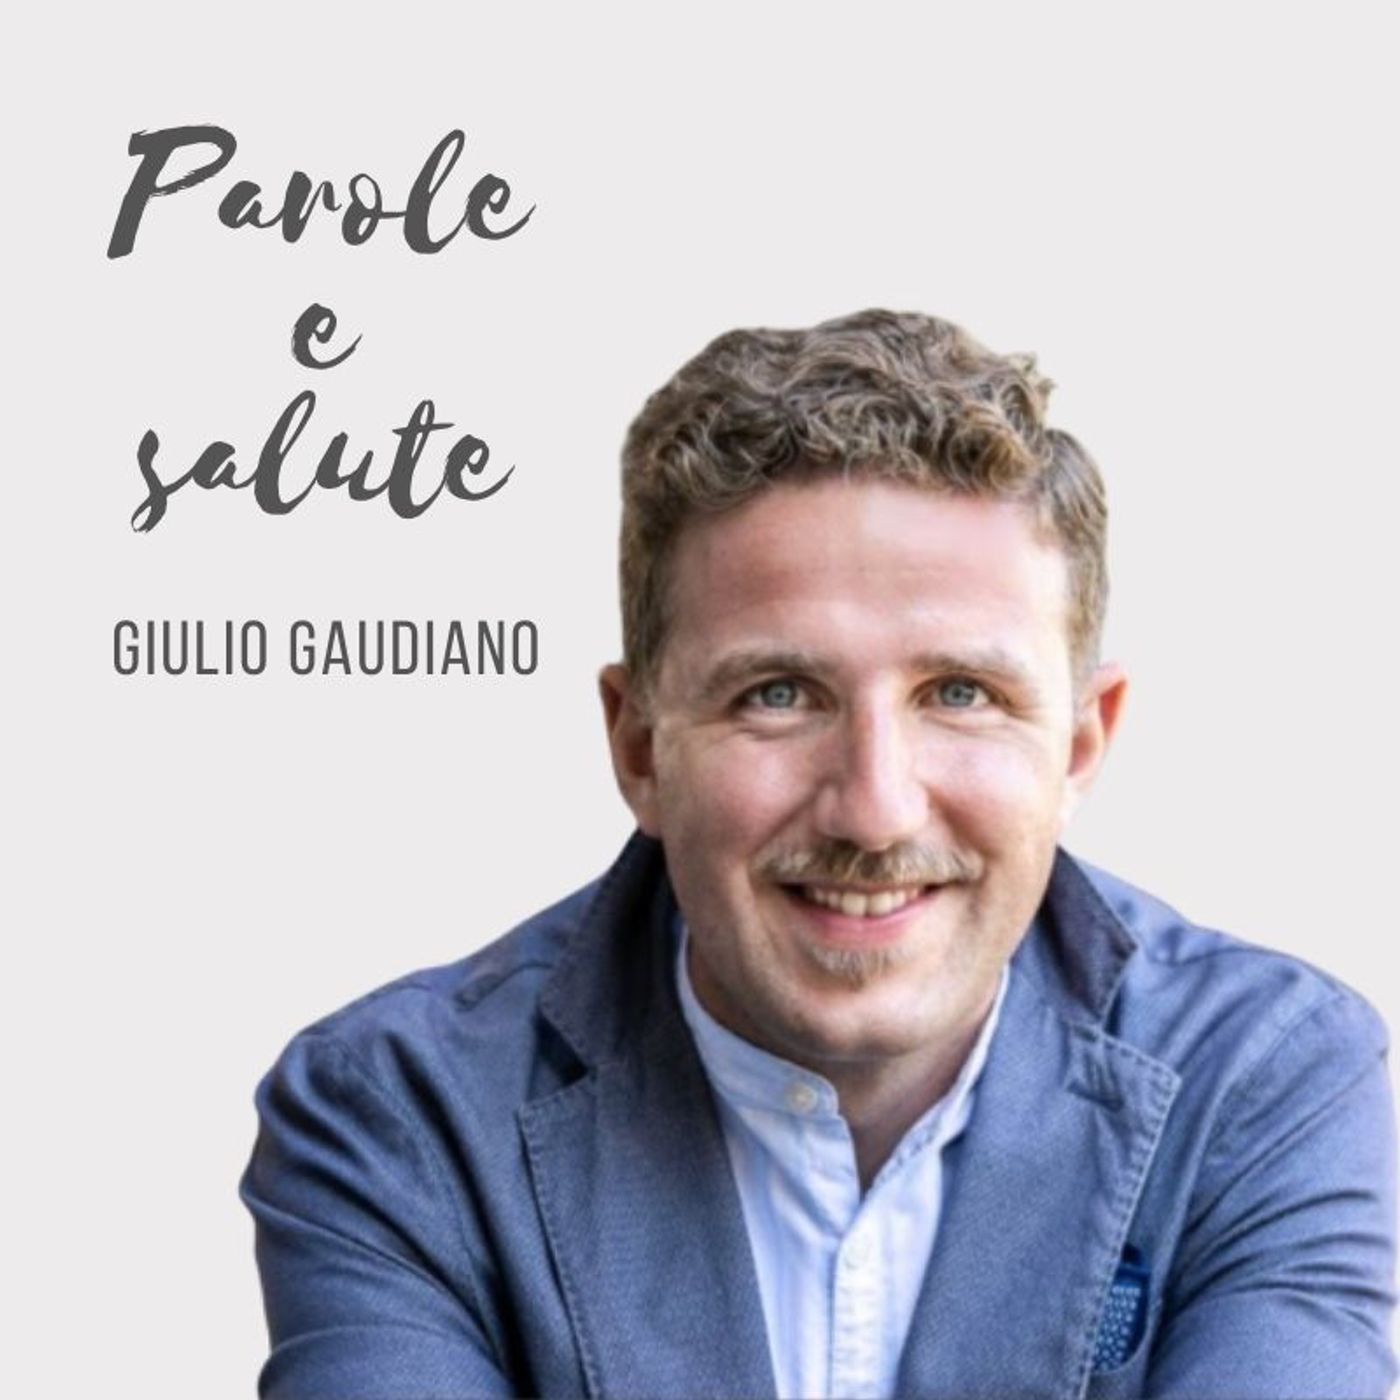 Comunicare il proprio brand usando il digital in modo consapevole - con Giulio Gaudiano [diretta live]